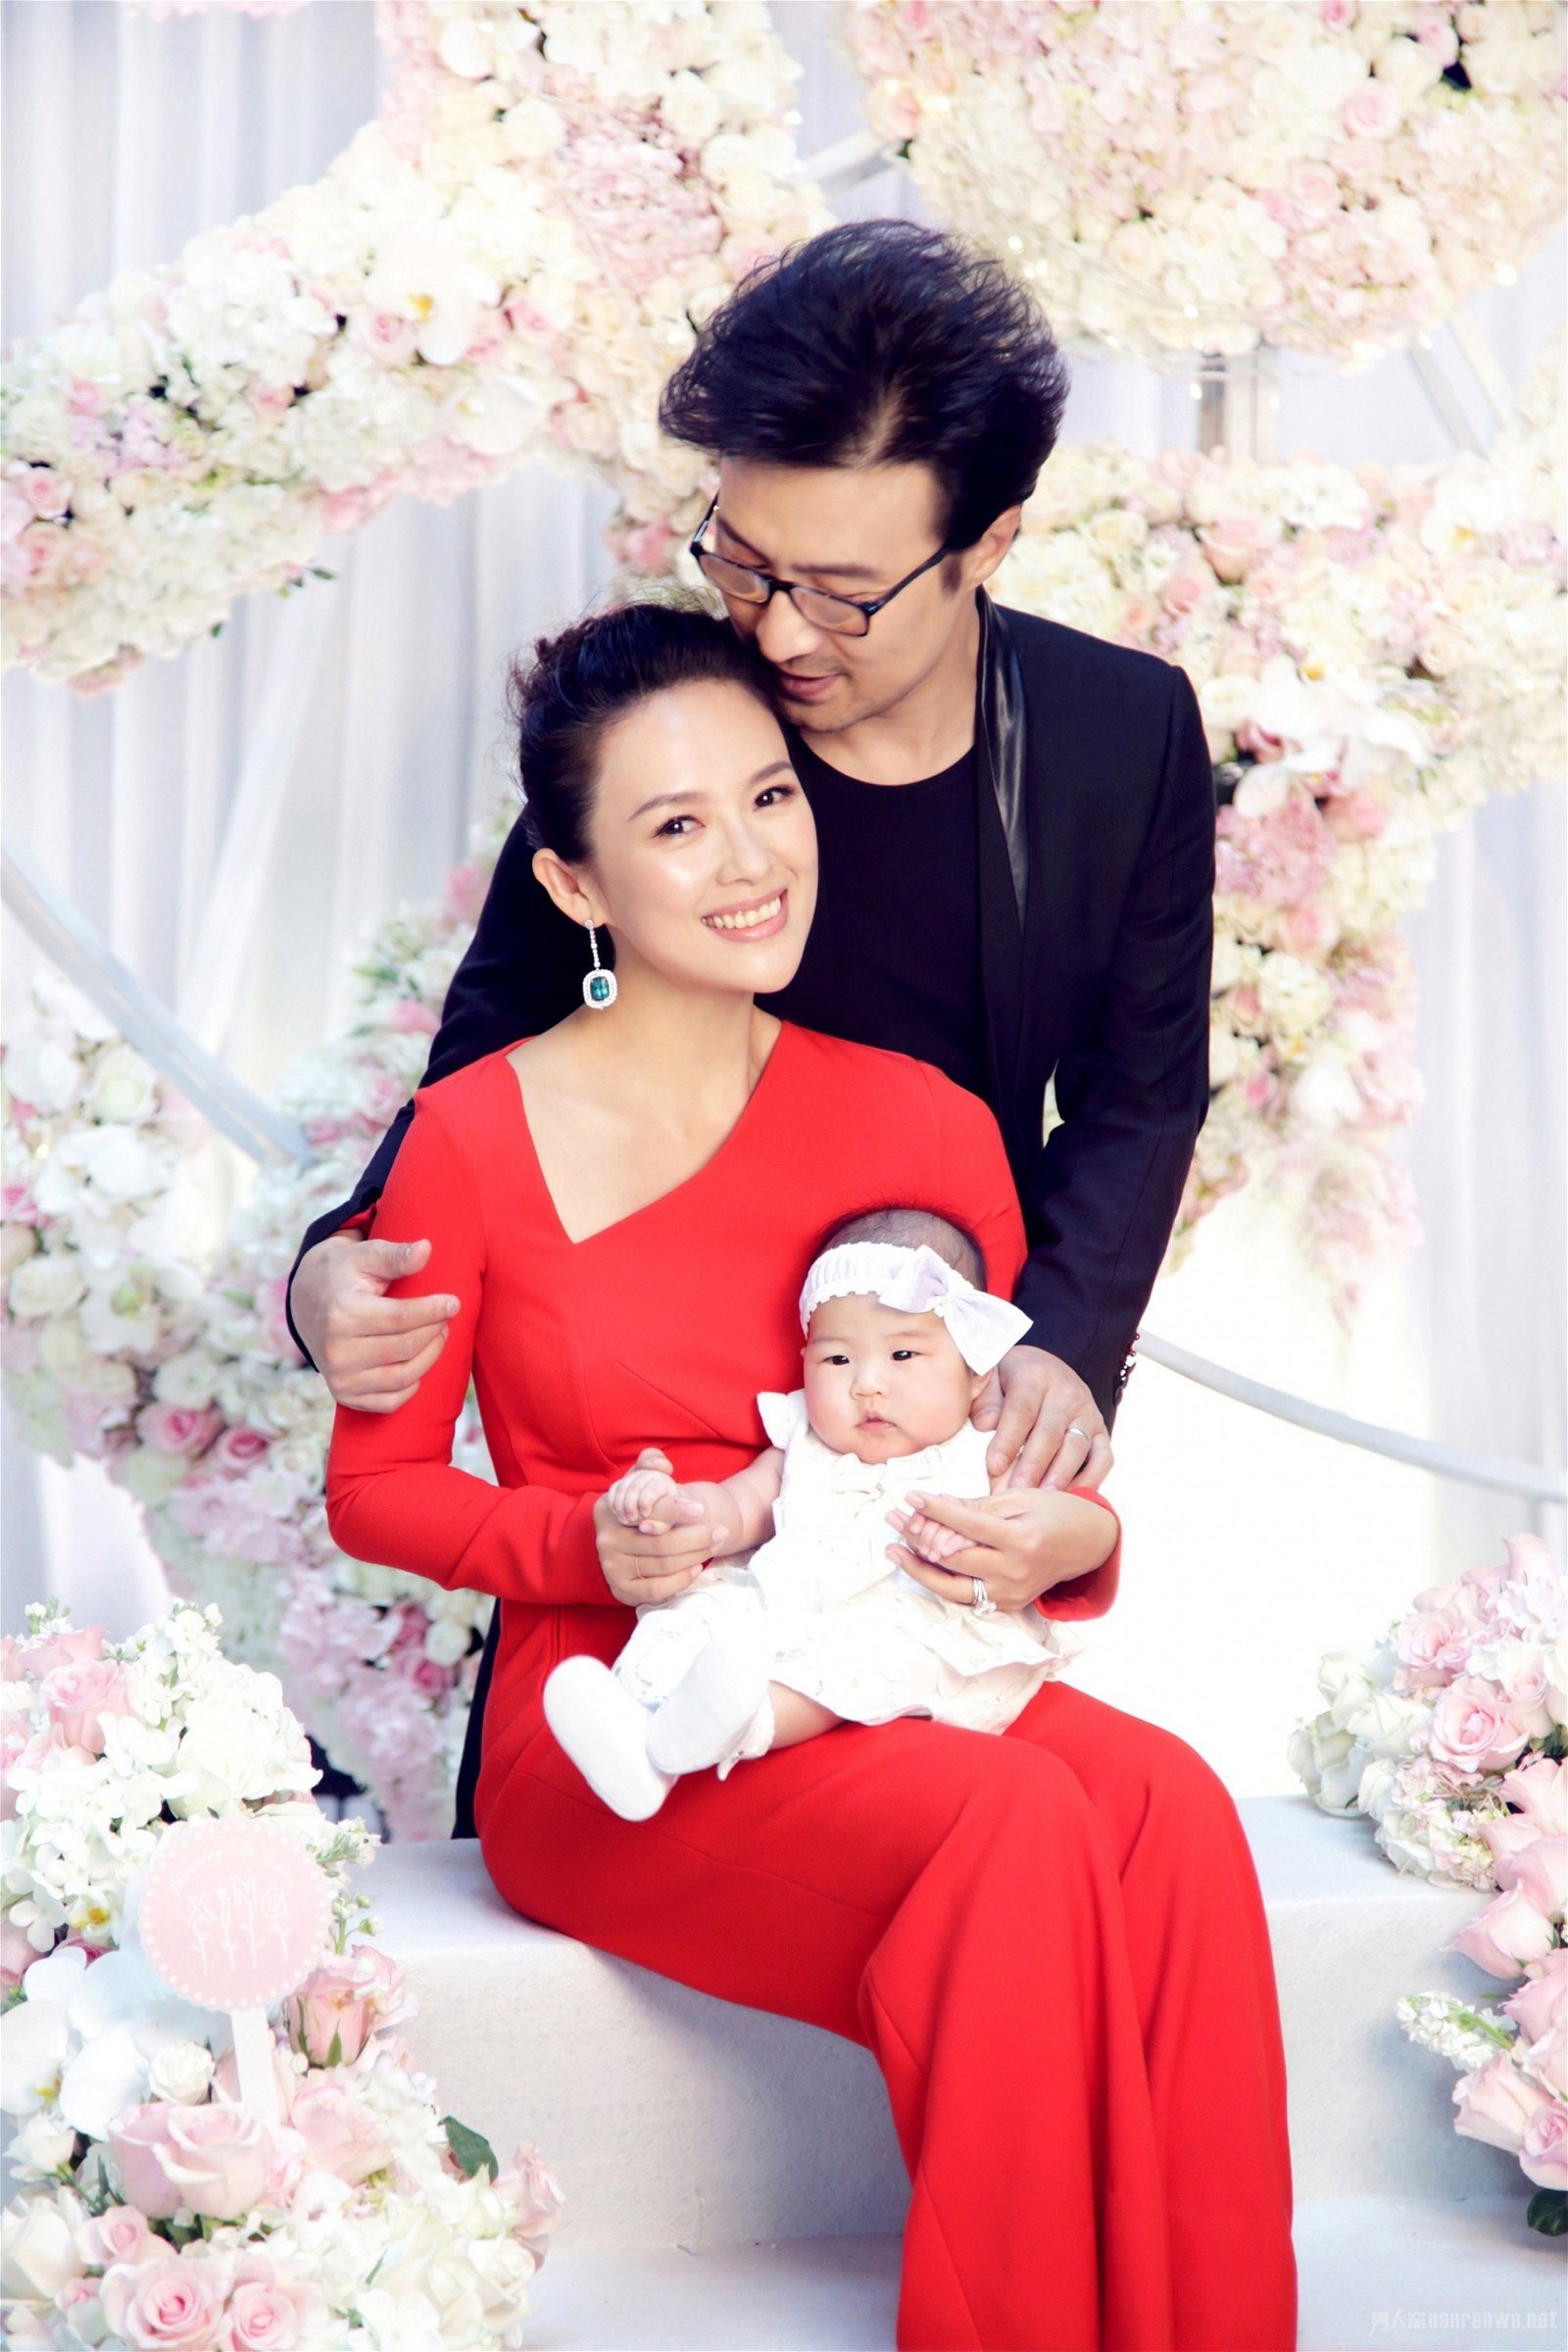 章子怡是国际巨星，对于办婚礼、当一日公主理应没有渴望，但近期她在中国节目《妻子浪漫旅行第二季》上透露，仍期待老公汪峰给她一个婚礼。